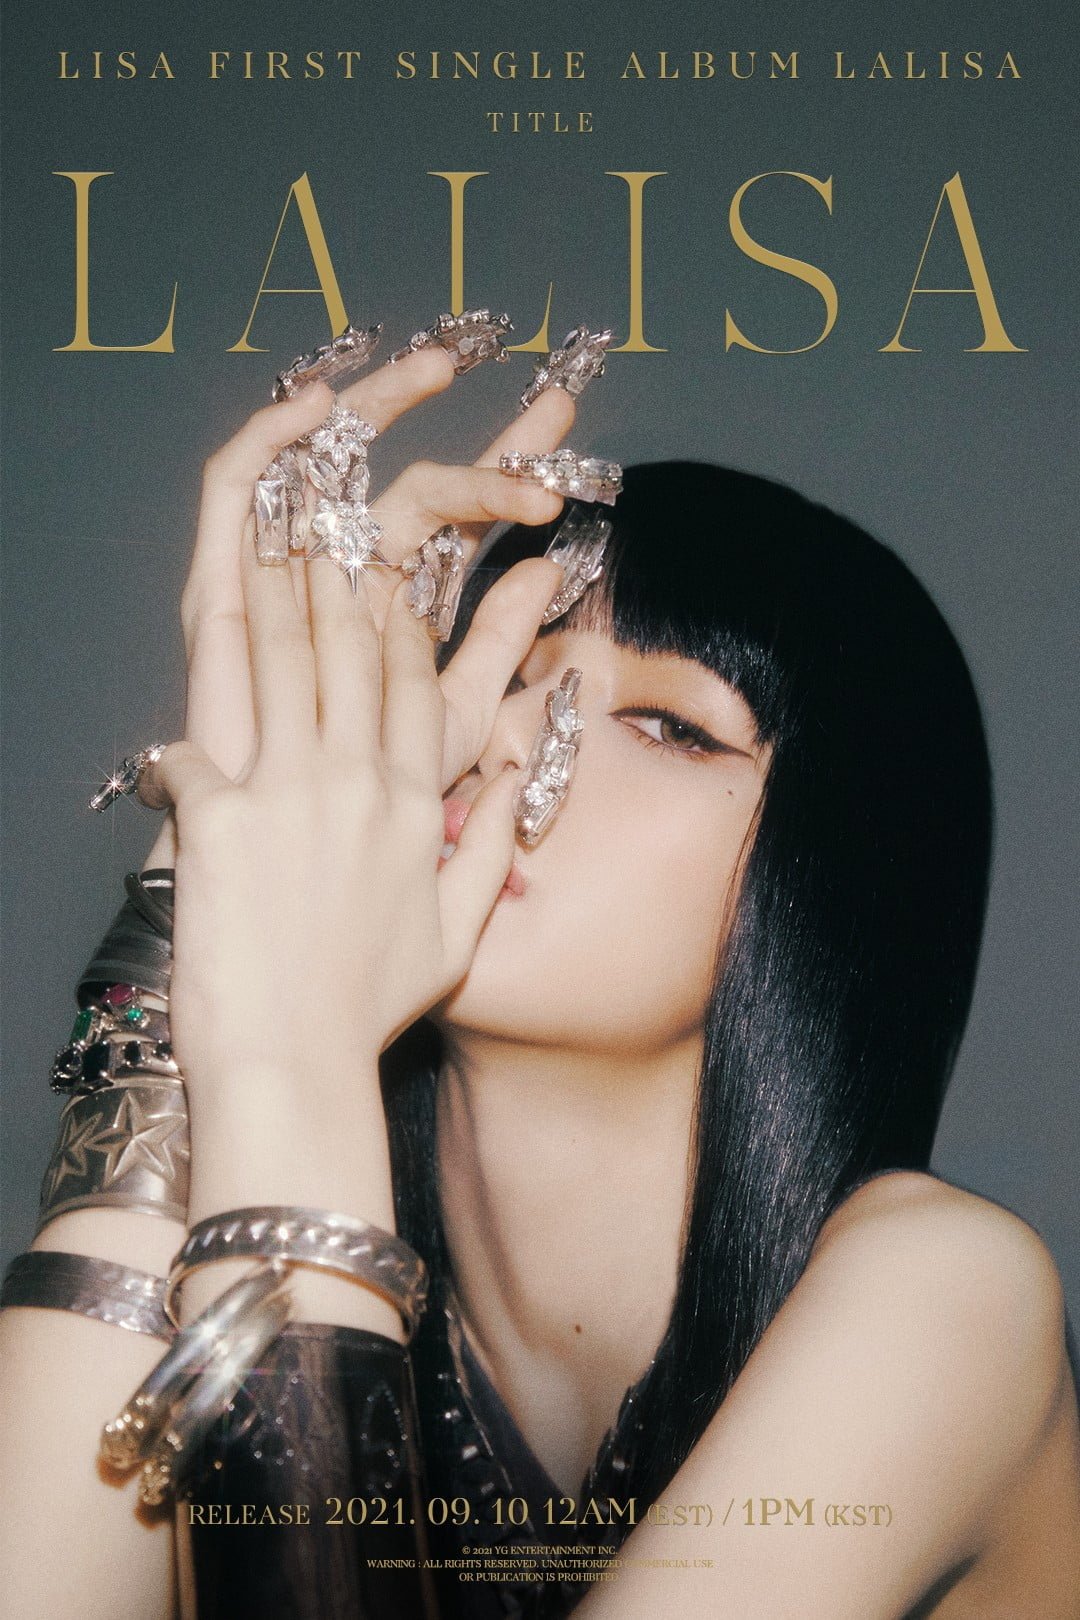 شاهد الإعلان التشويقي الأول لألبوم ليسا Lalisa + الملصقات التشويقية لترسيم ليسا كفنانة منفردة + آراء مستخدمي الأنترنت